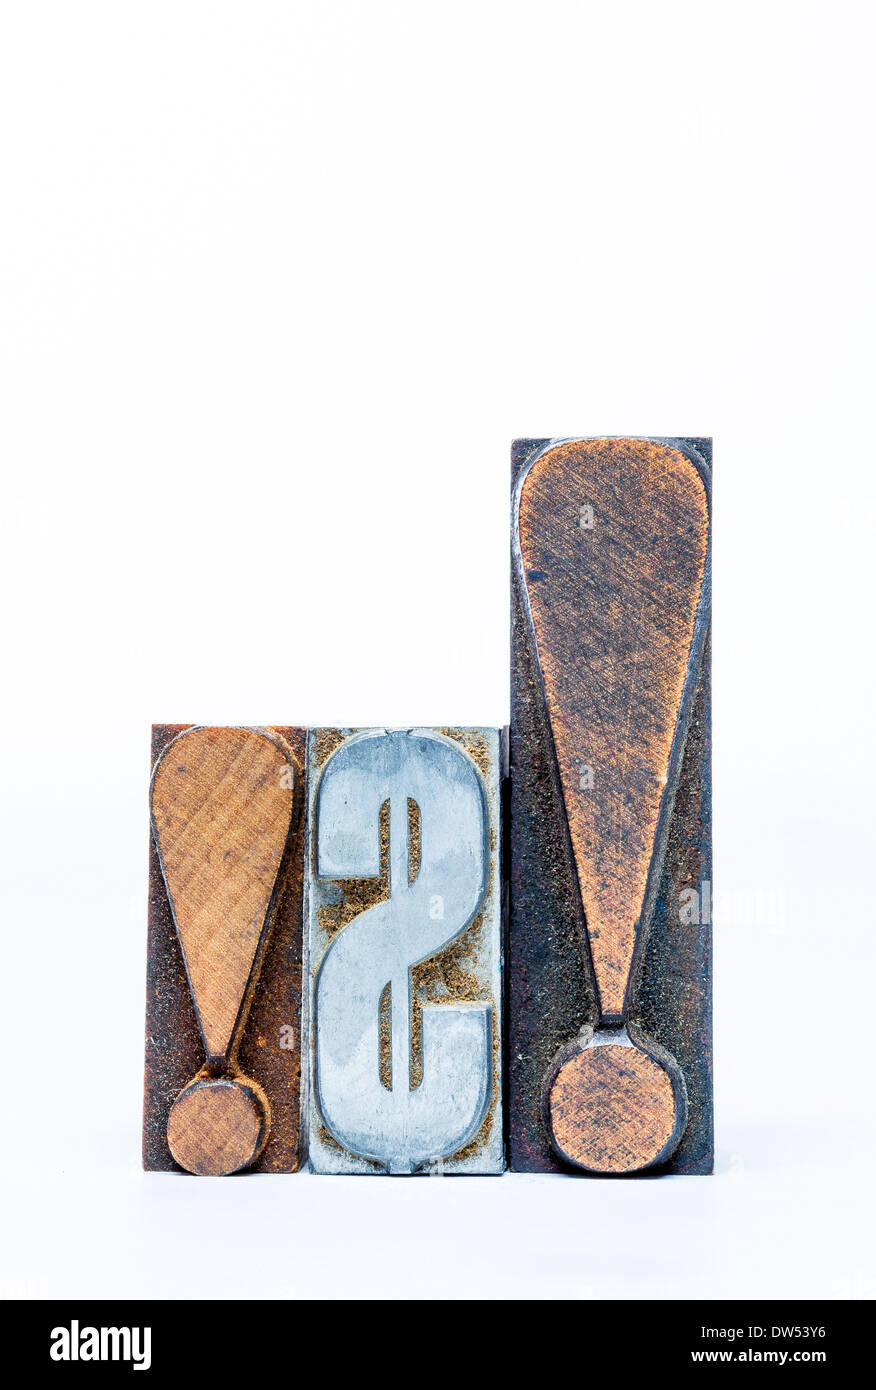 Metal y madera de Movable Type US dollar signo y signo de exclamación Foto de stock